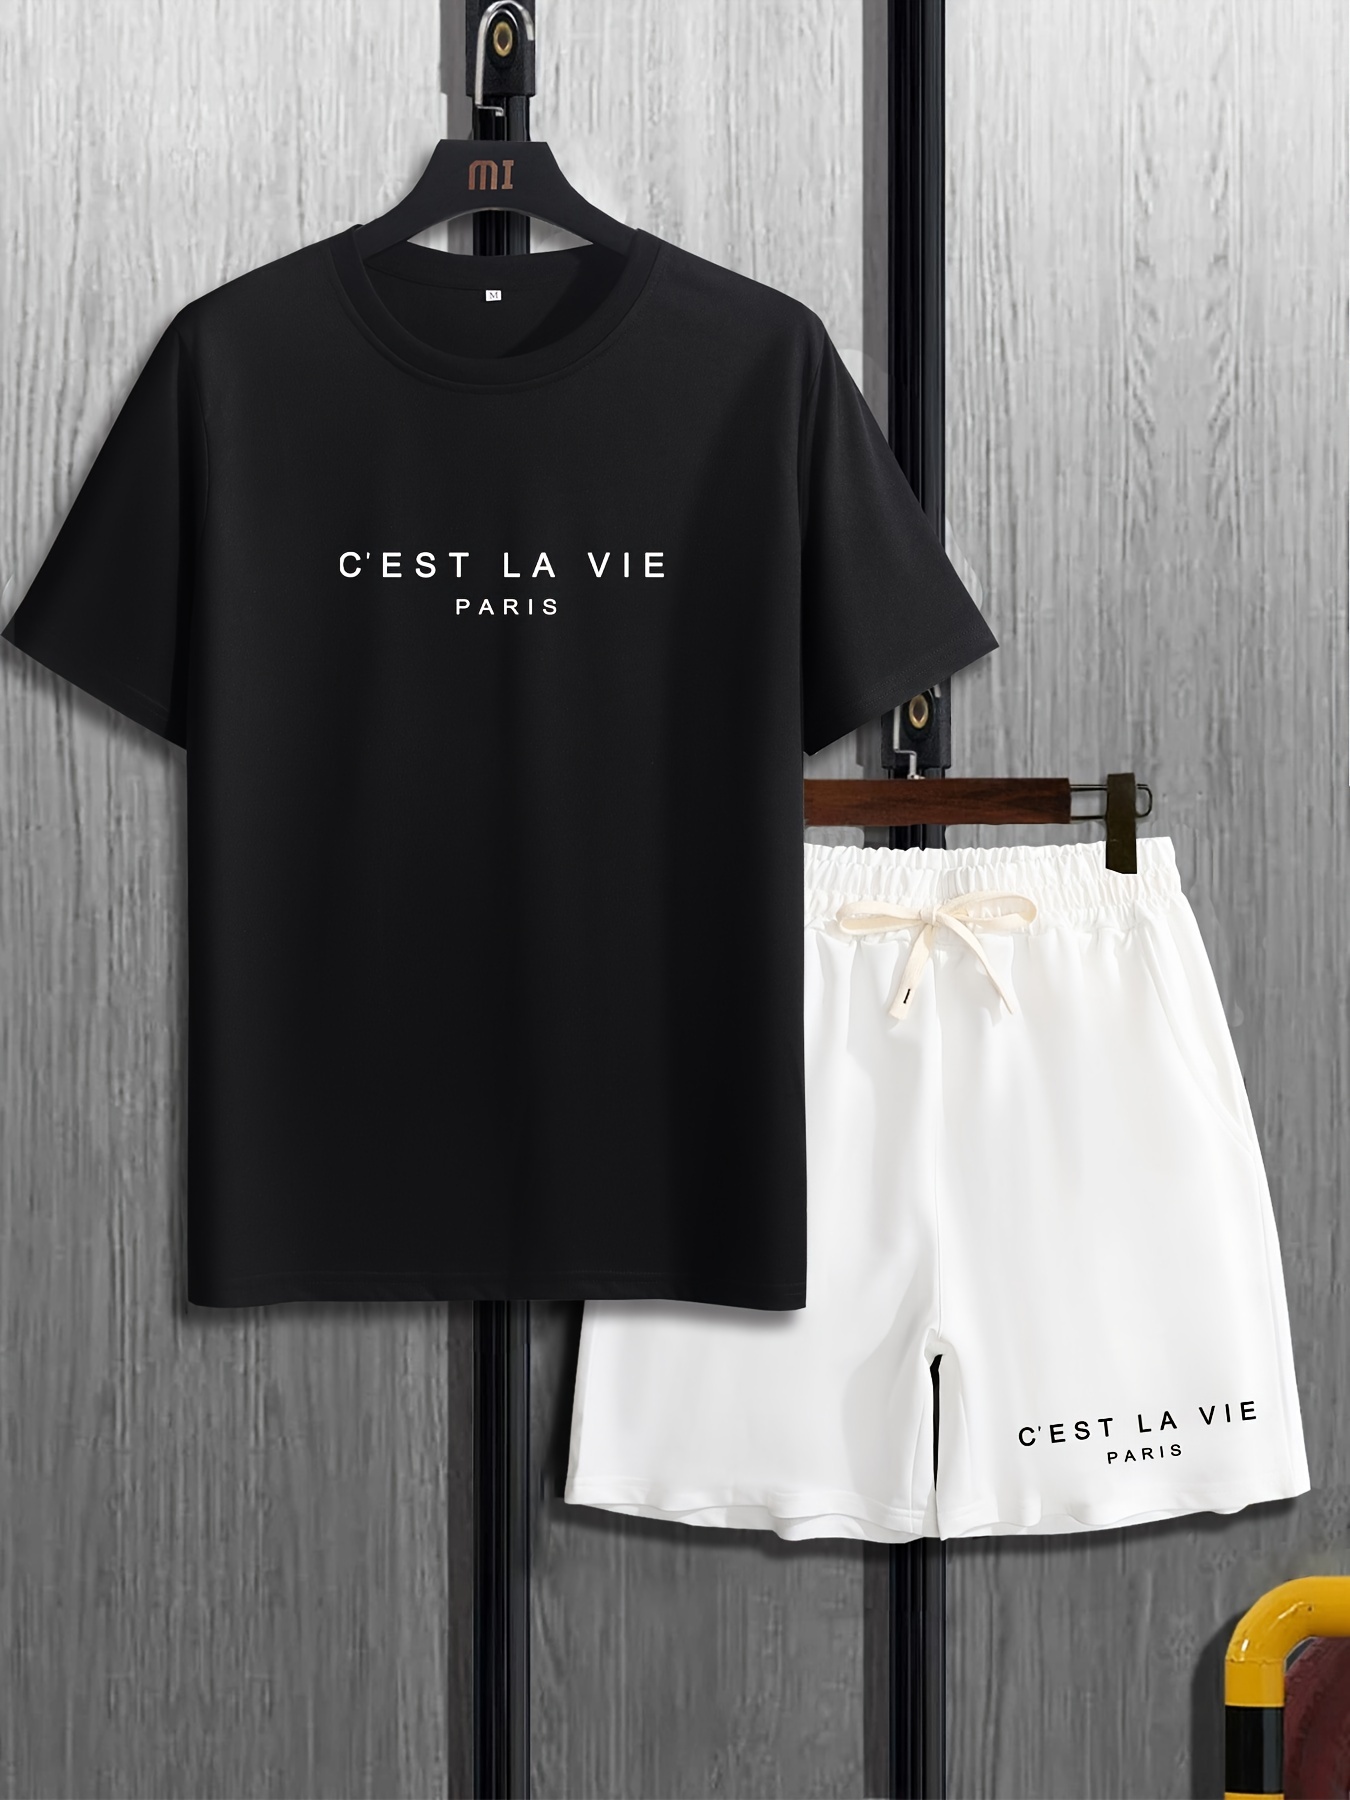  C'est la vie Paris T-Shirt : Clothing, Shoes & Jewelry